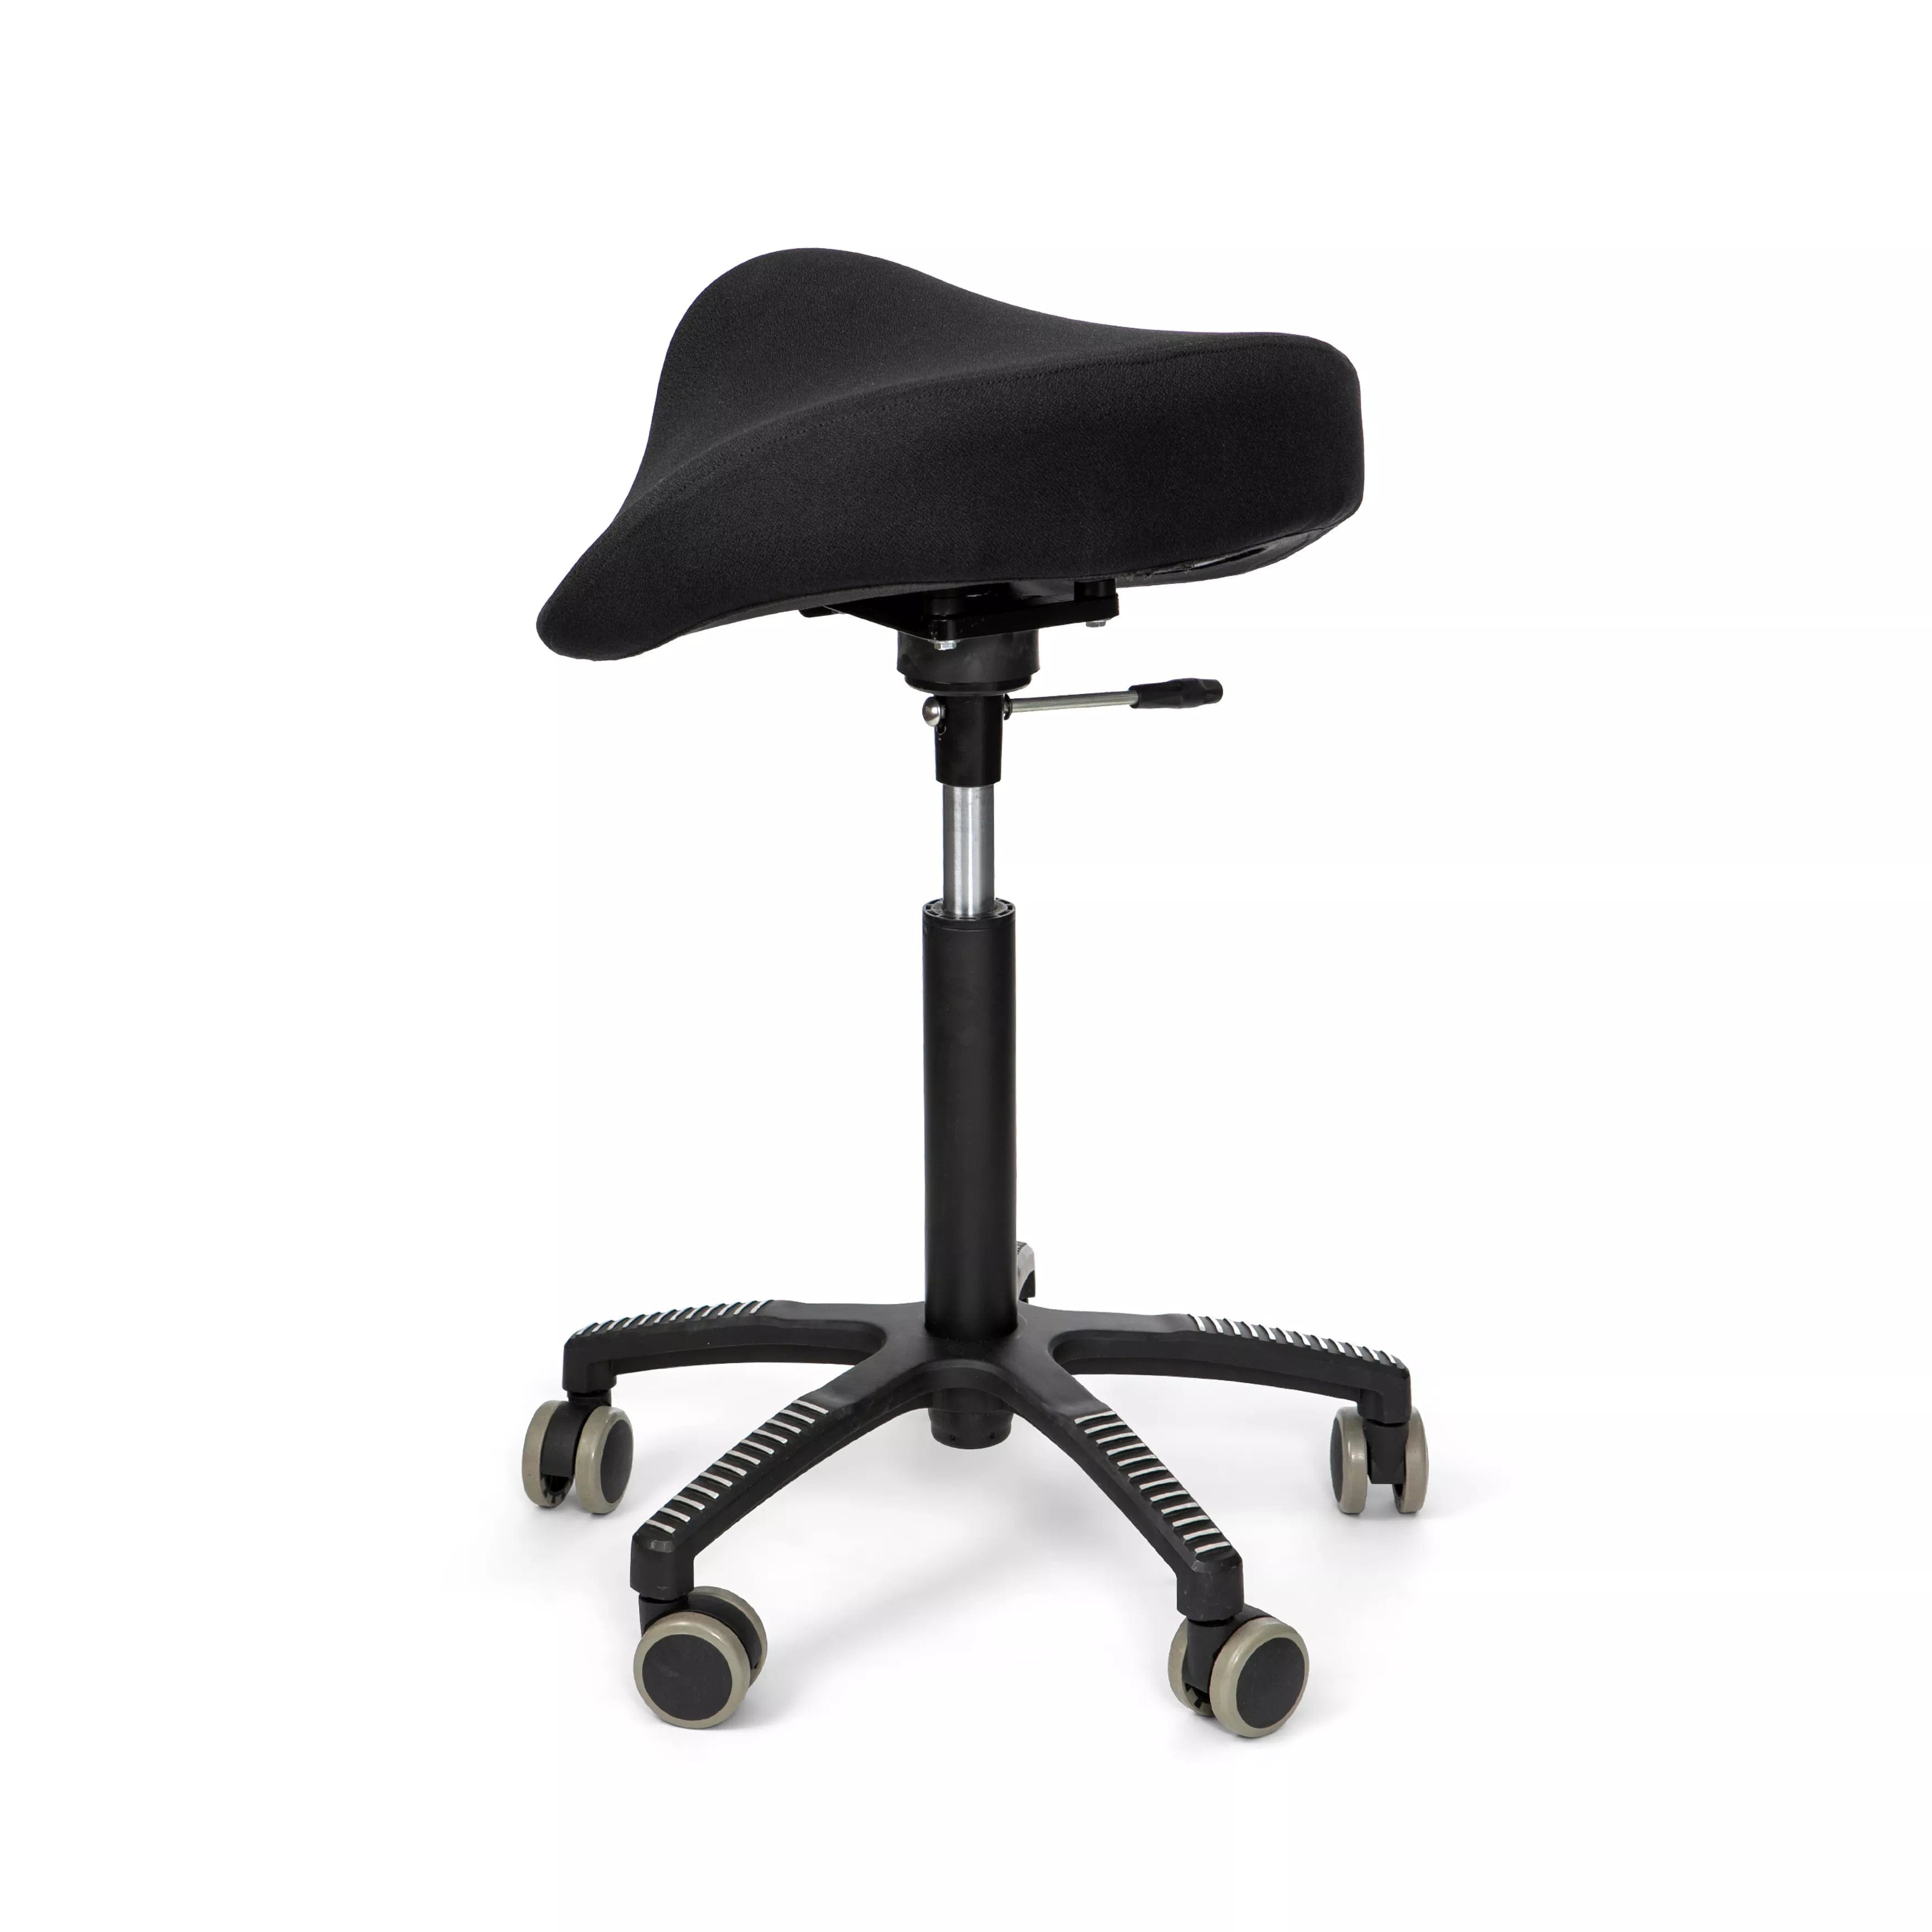  Soft Swing sadelstol - Aktiva stolar och sitsar, koncentrationssvårigheter, ryggbesvär, Sadelstolar, Stolar, trötthet - ErgoFinland